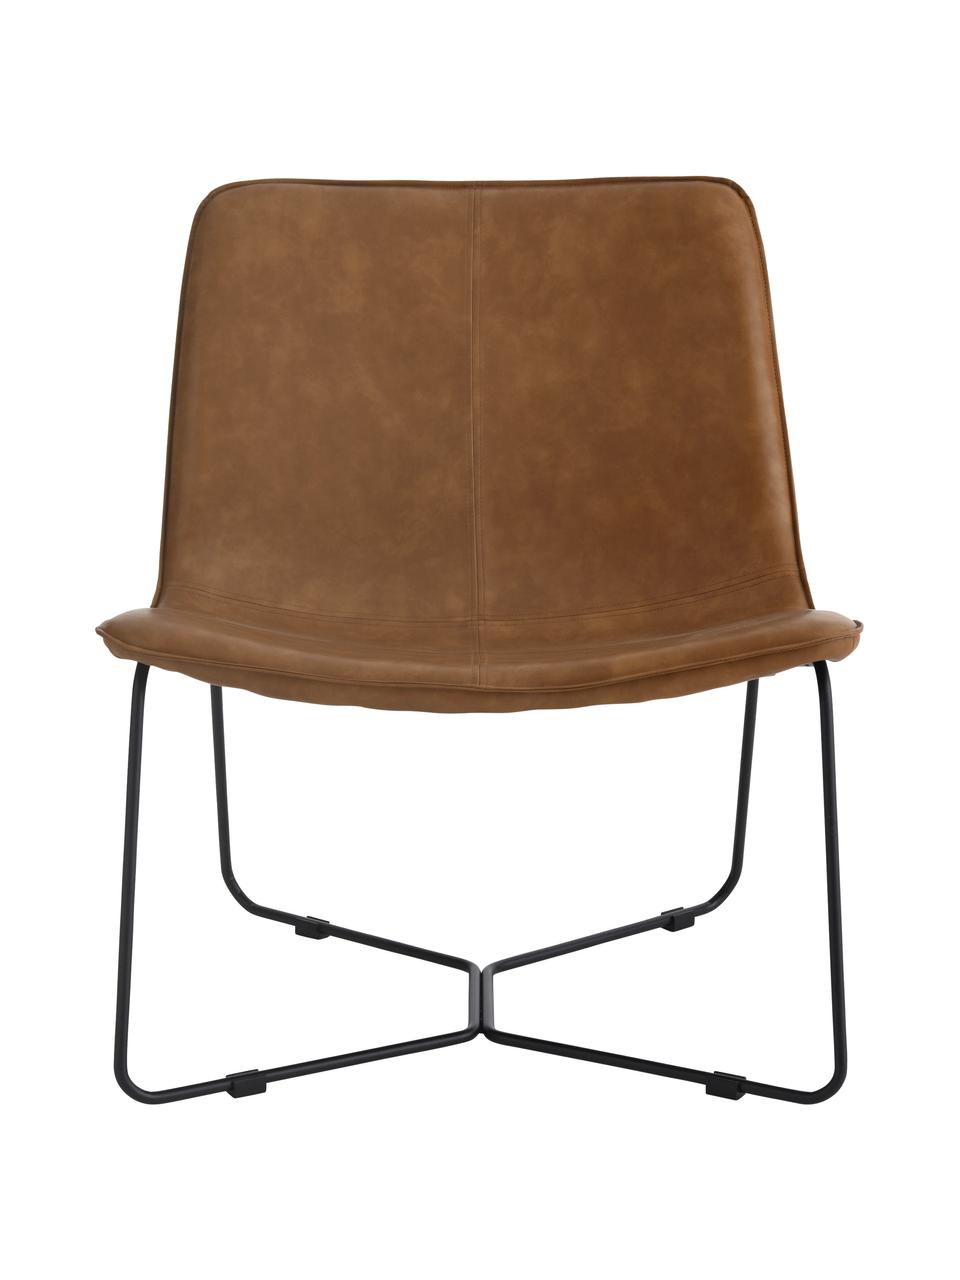 Kunstleren lounge fauteuil Barrel in bruin, Bekleding: 100% kunstleer, Frame: gecoat metaal, Kunstleer bruin, zwart, B 68 cm x D 64 cm